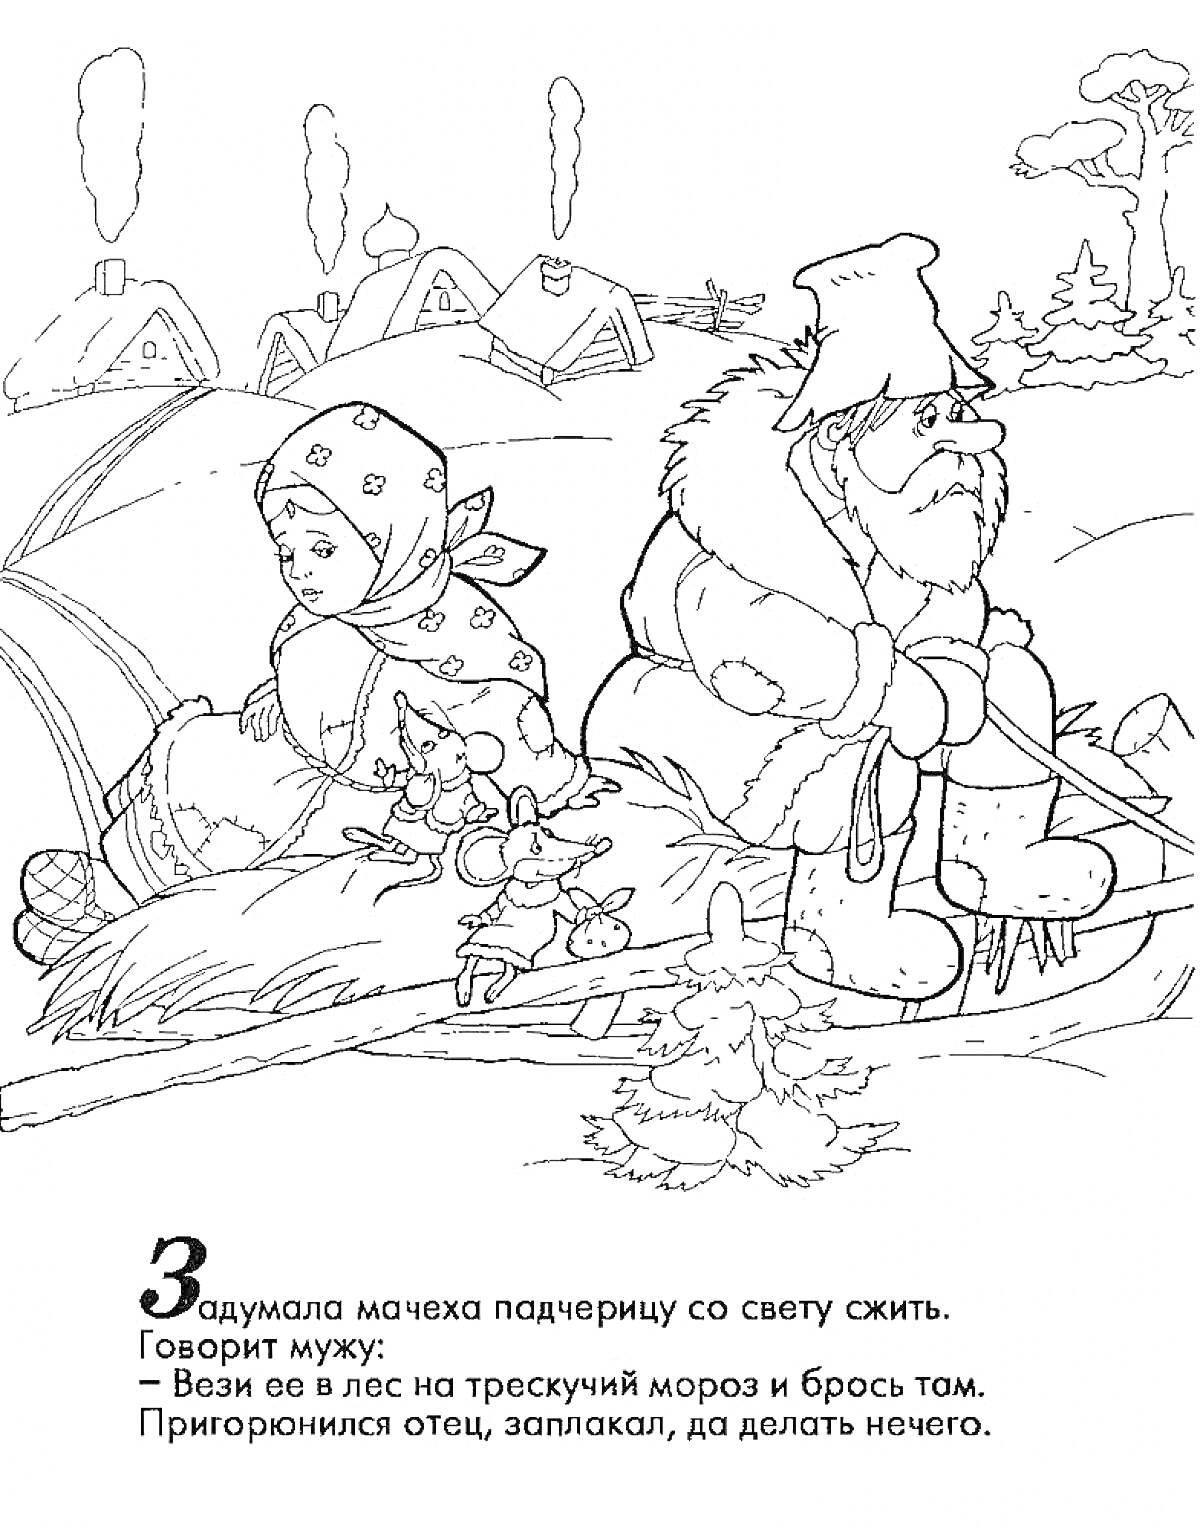 Падчерица и отчим в лесу с домами, деревьями и снеговиком